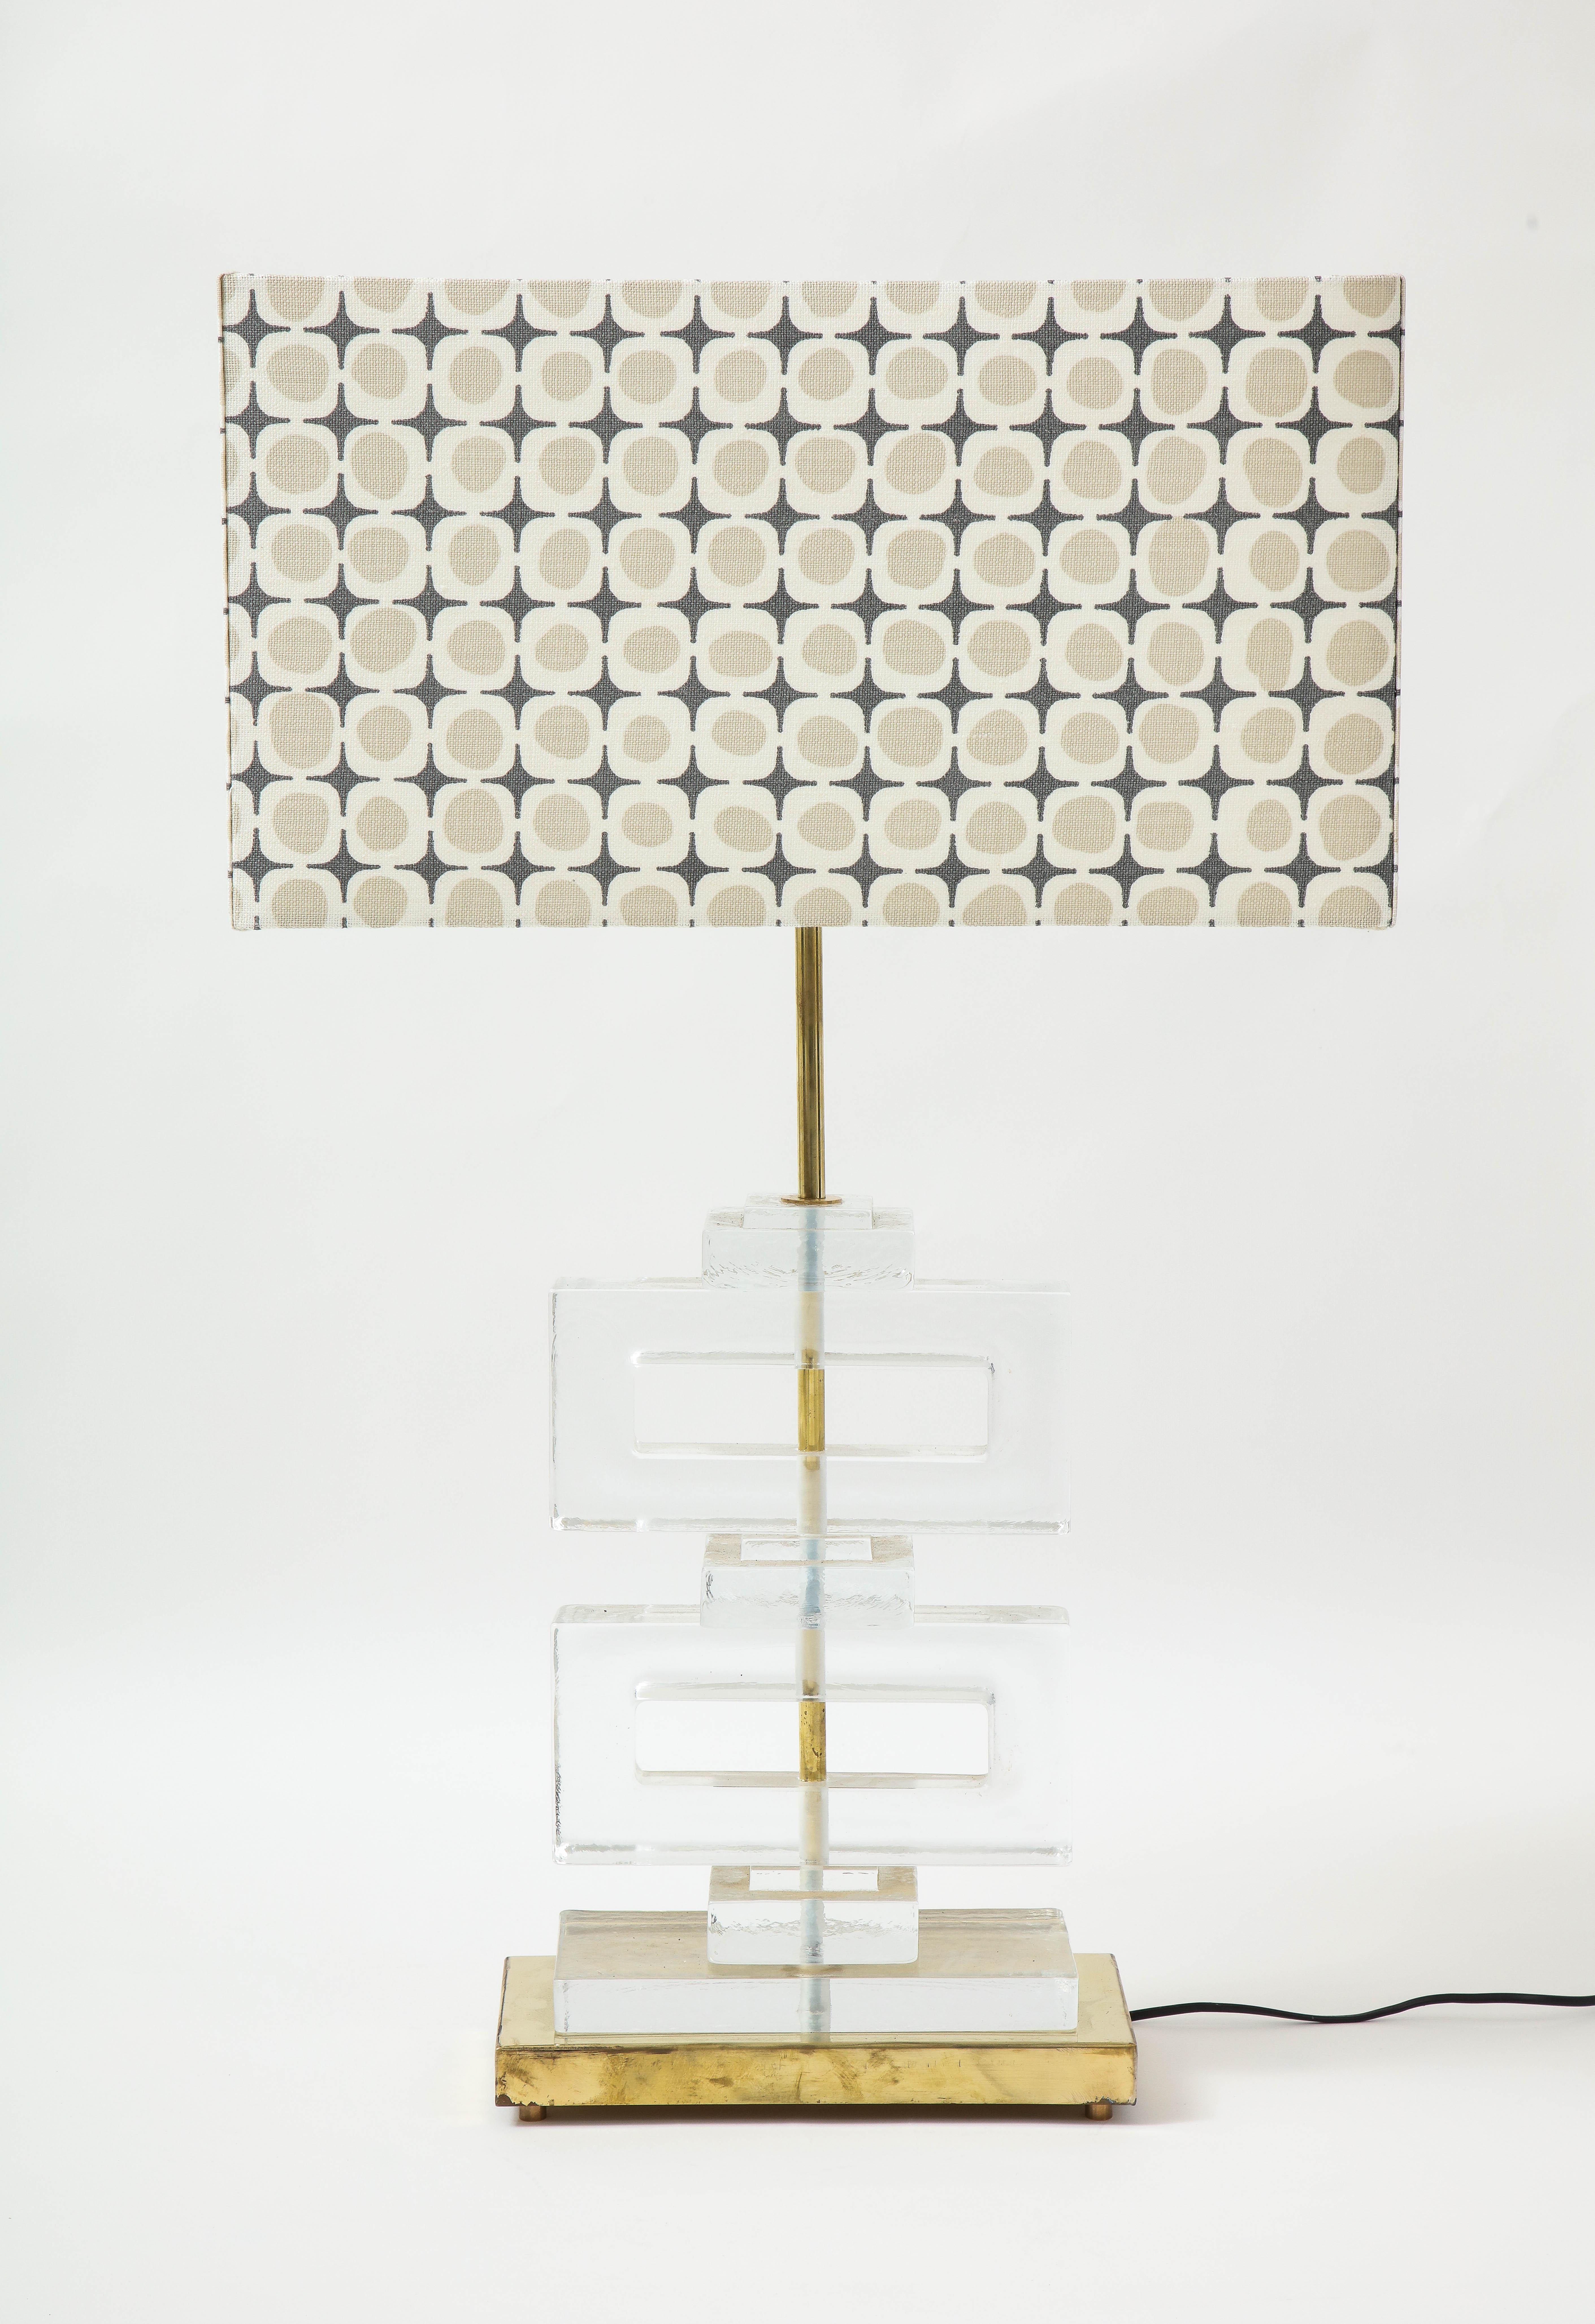 Ein Paar Murano-Lampen aus geformtem Klarglas des 21. Jahrhunderts. Die durchsichtigen Blöcke sind ein klassisches Motiv der Mid-Century-Moderne, das häufig in Bildschirmen zu sehen ist. Die Glassteine stehen auf einem Messingfuß und haben einen